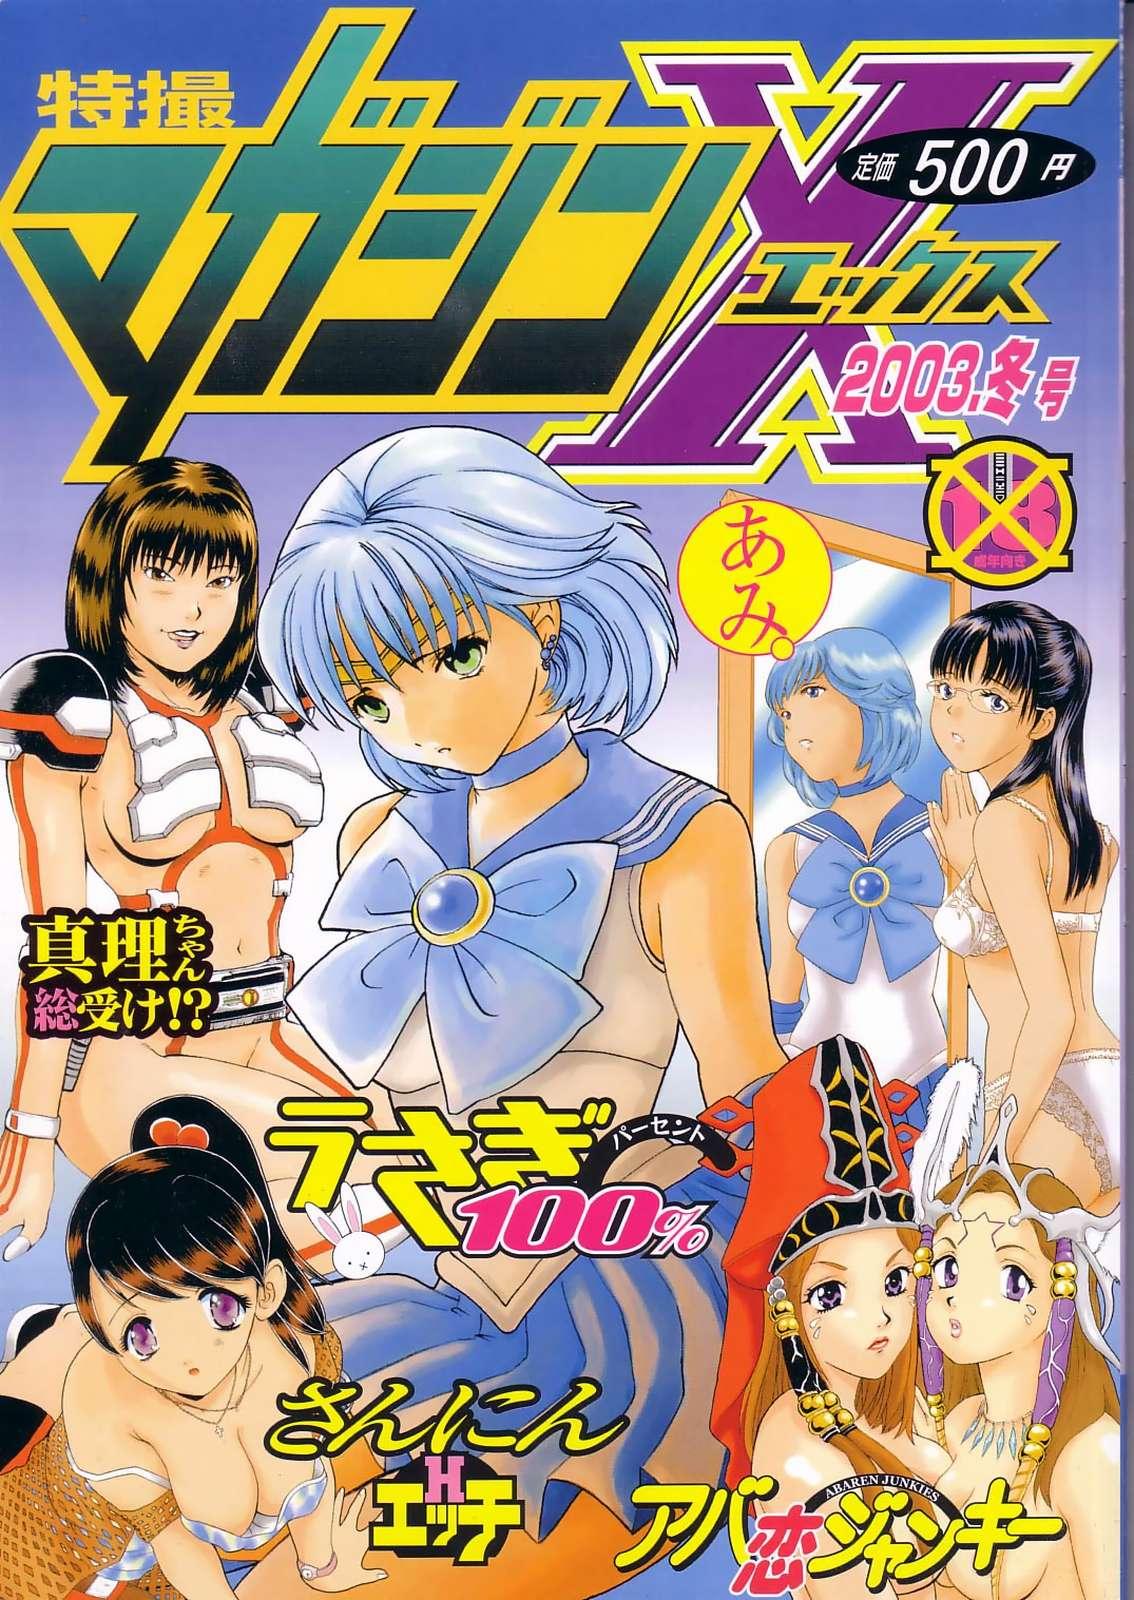 Danish Tokusatsu Magazine x 2003 Fuyu Gou - Sailor moon Ichigo 100 Nena - Page 1